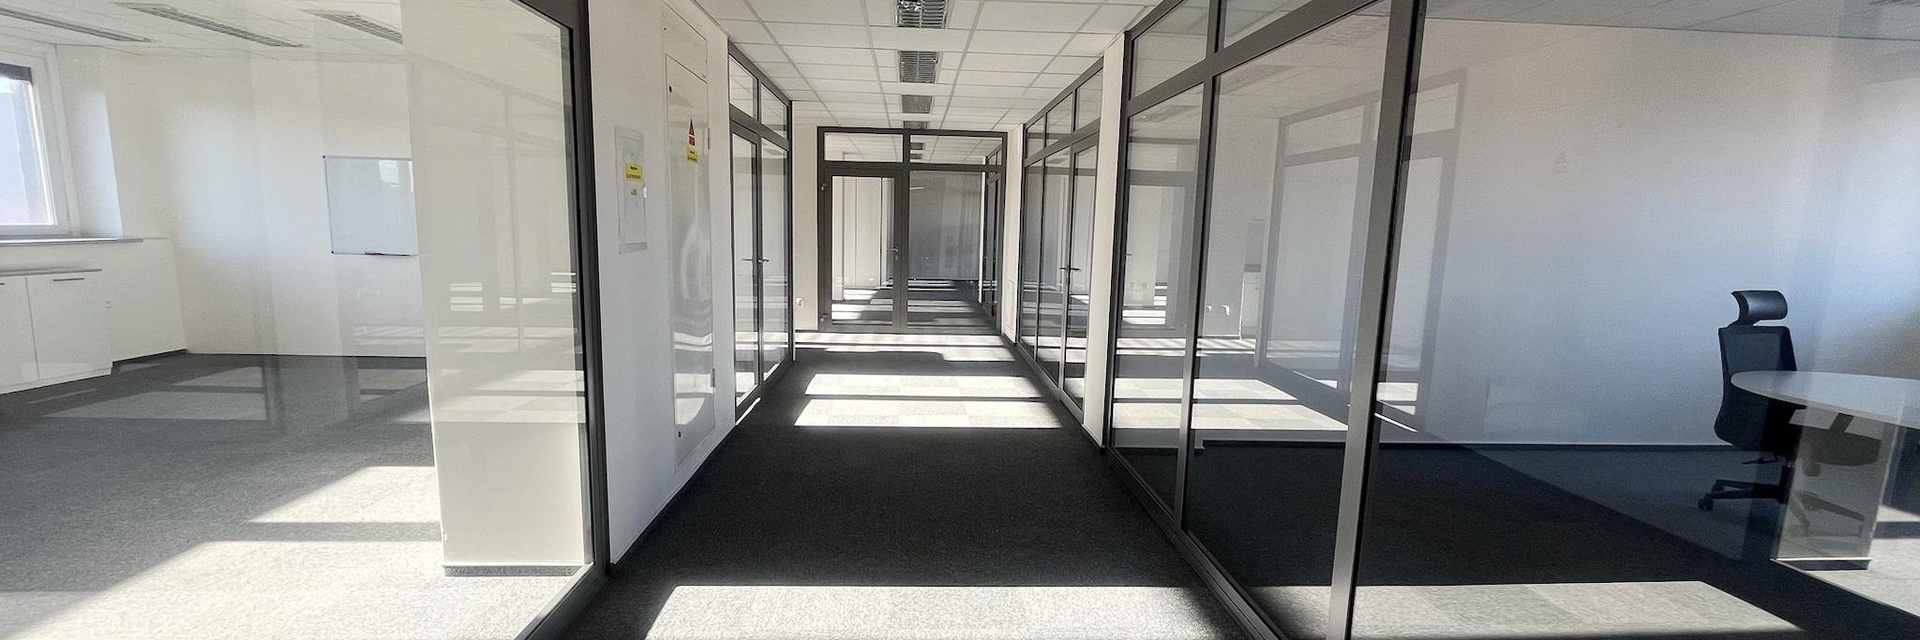 Pronájem klimatizovaného kancelářského celku 127 m², v centru Brna, ul. Milady Horákové